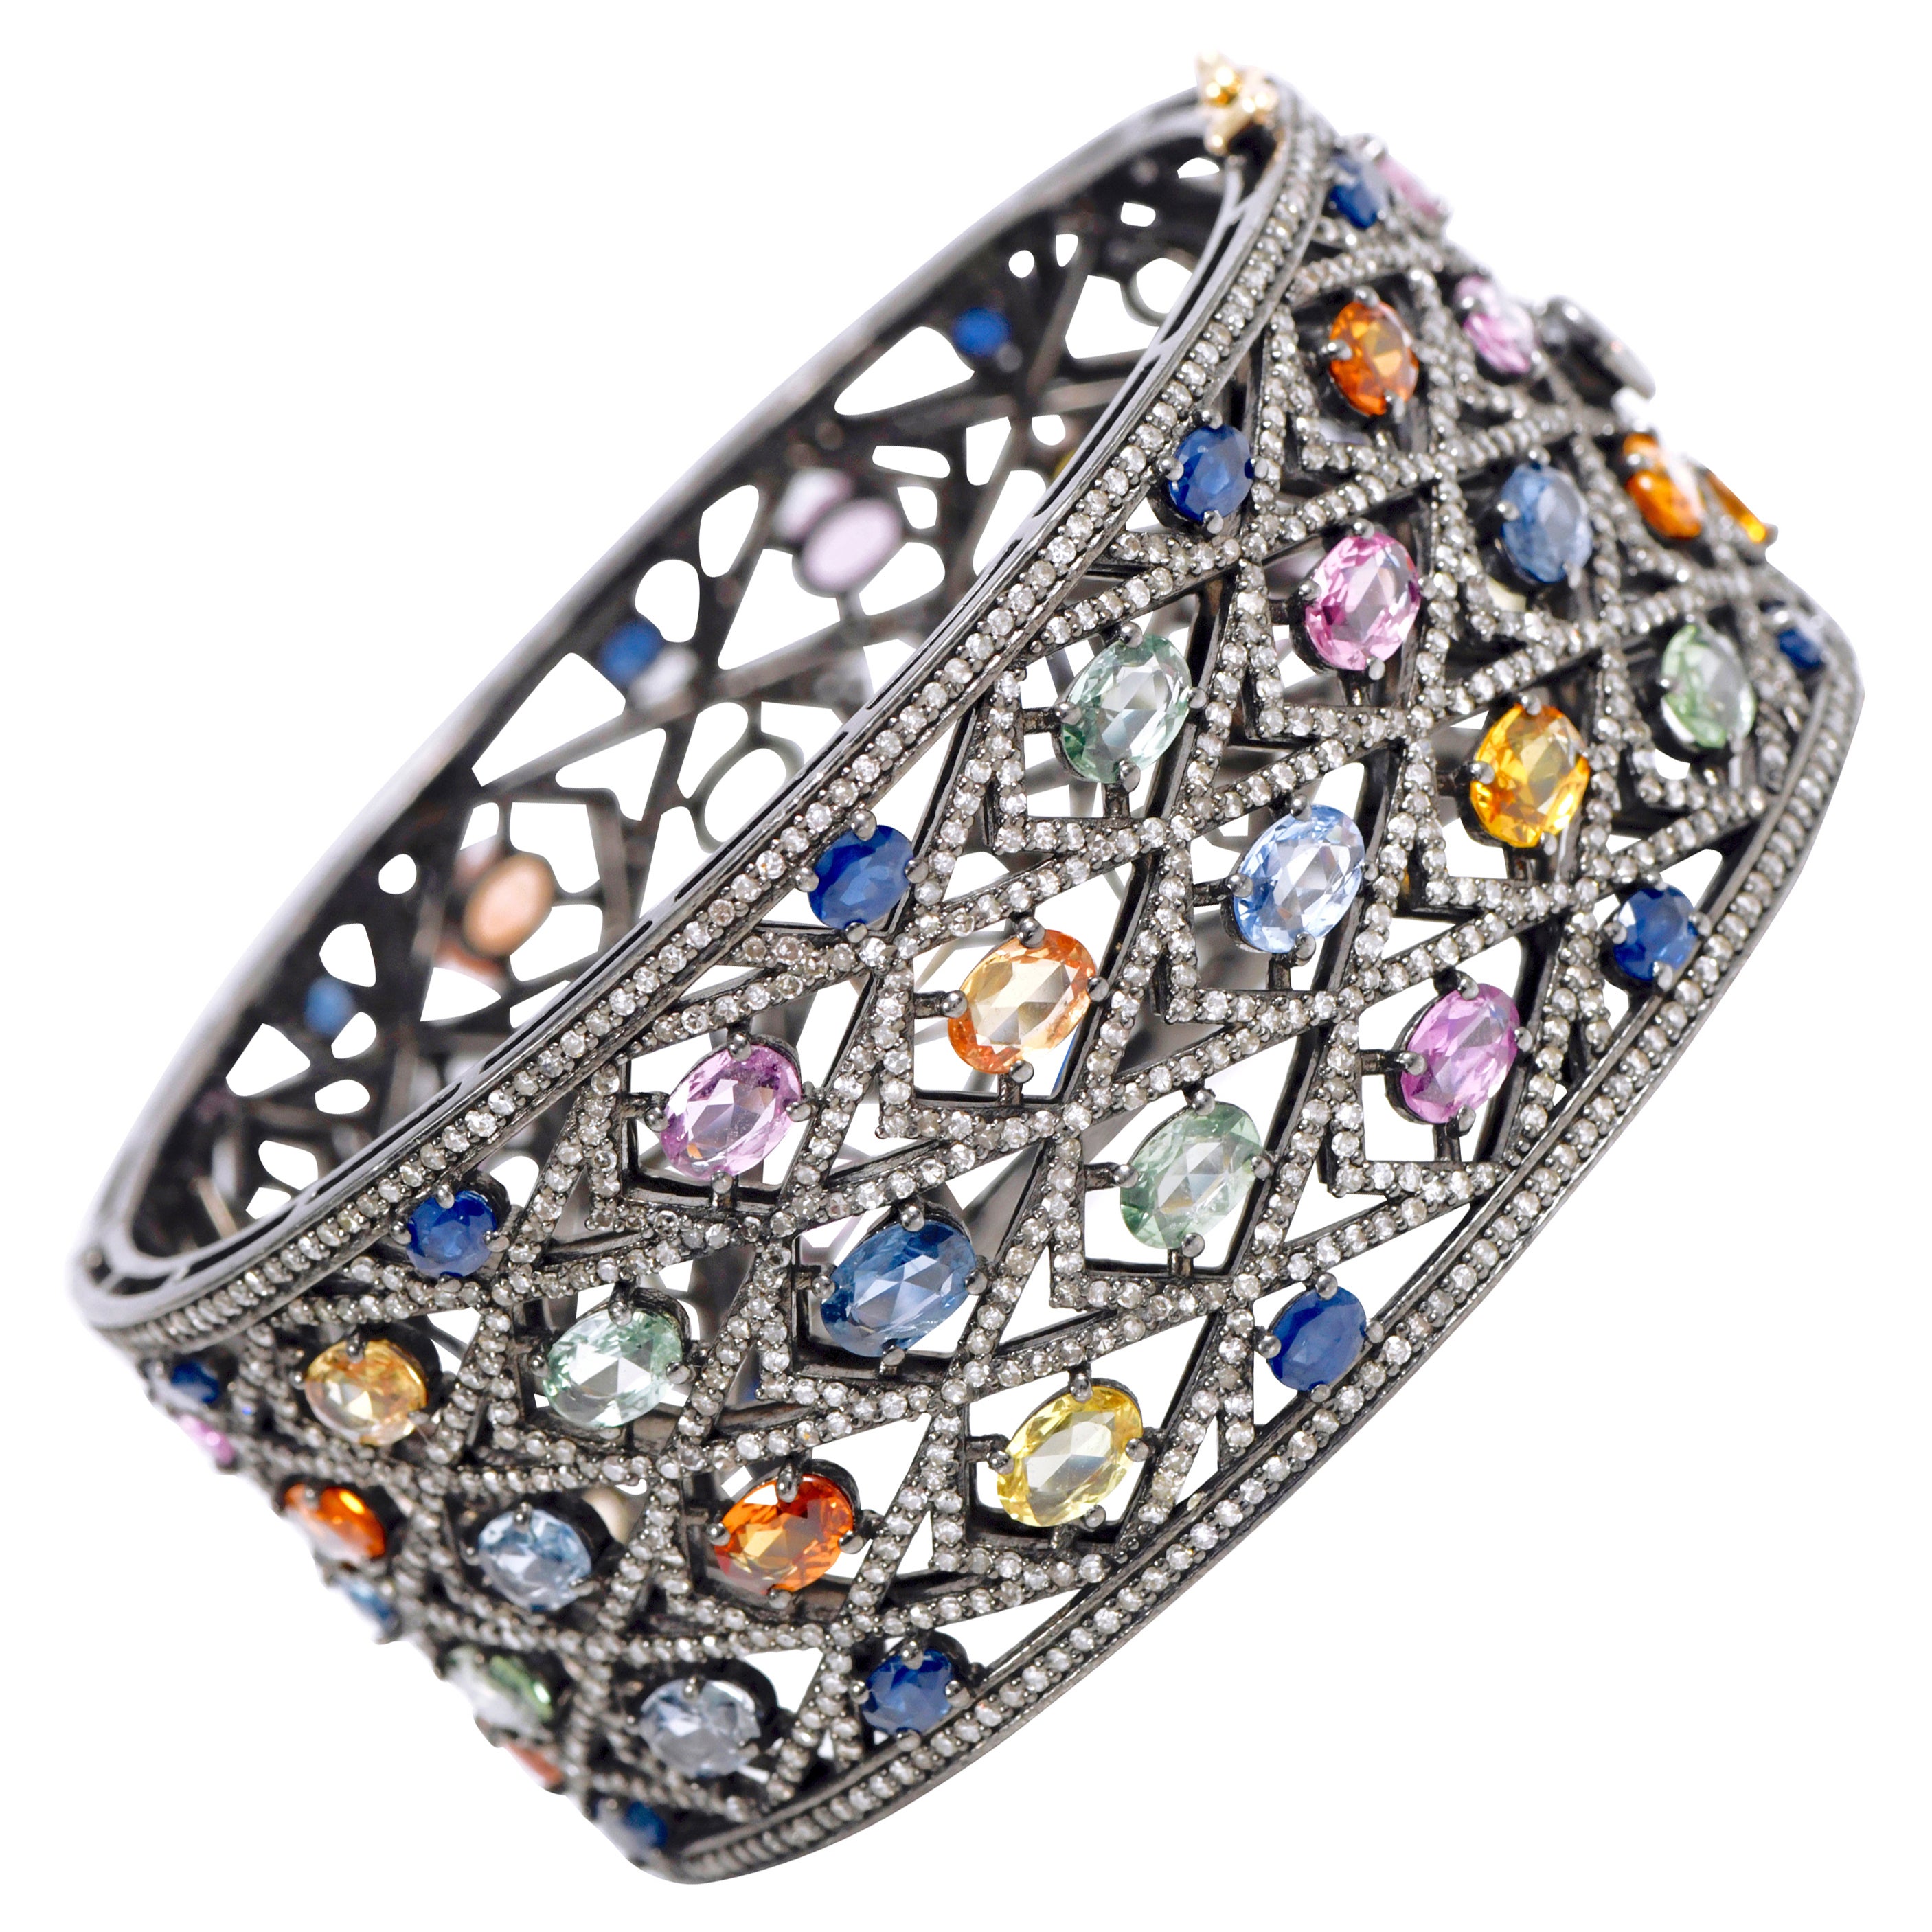 Regenbogen-Armreif mit mehreren Applikationen und Diamanten im viktorianischen Art-déco-Stil